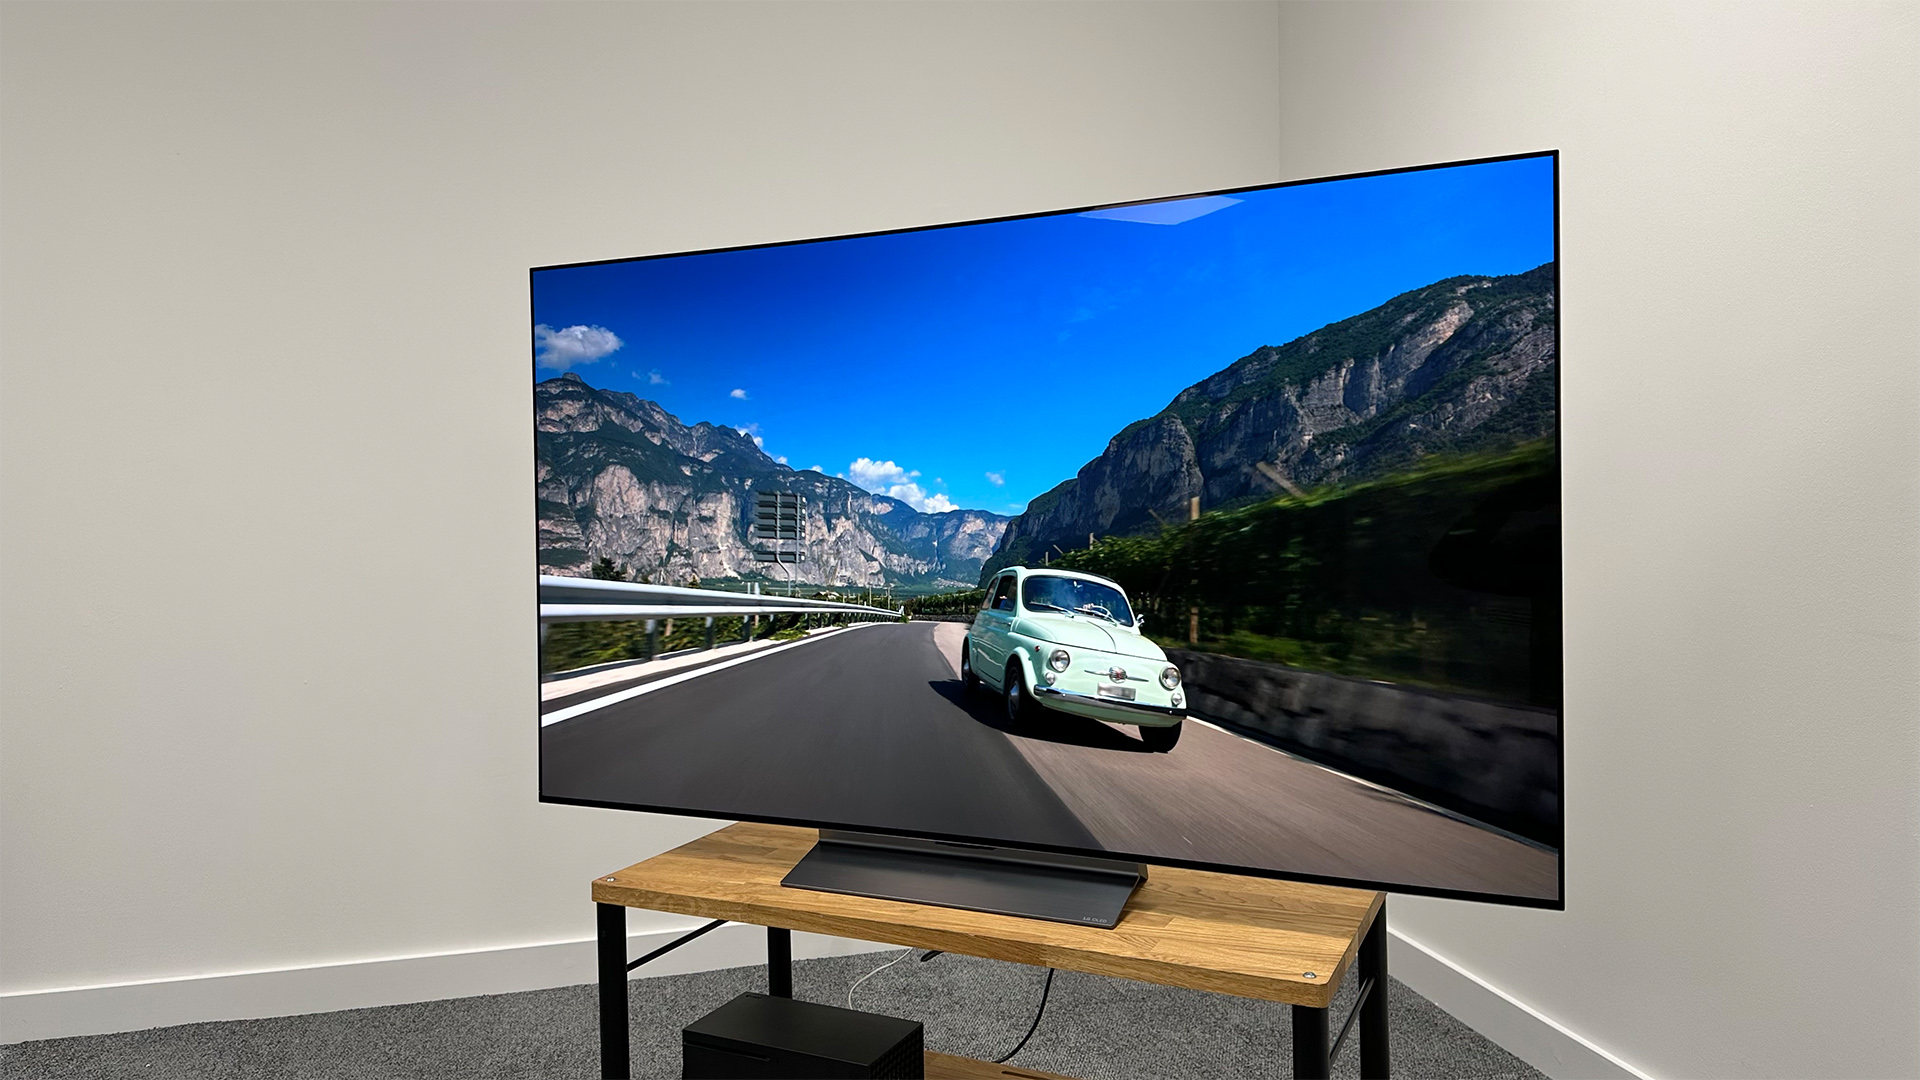 LG C3 OLED TV hands on! Best TV gets better? 